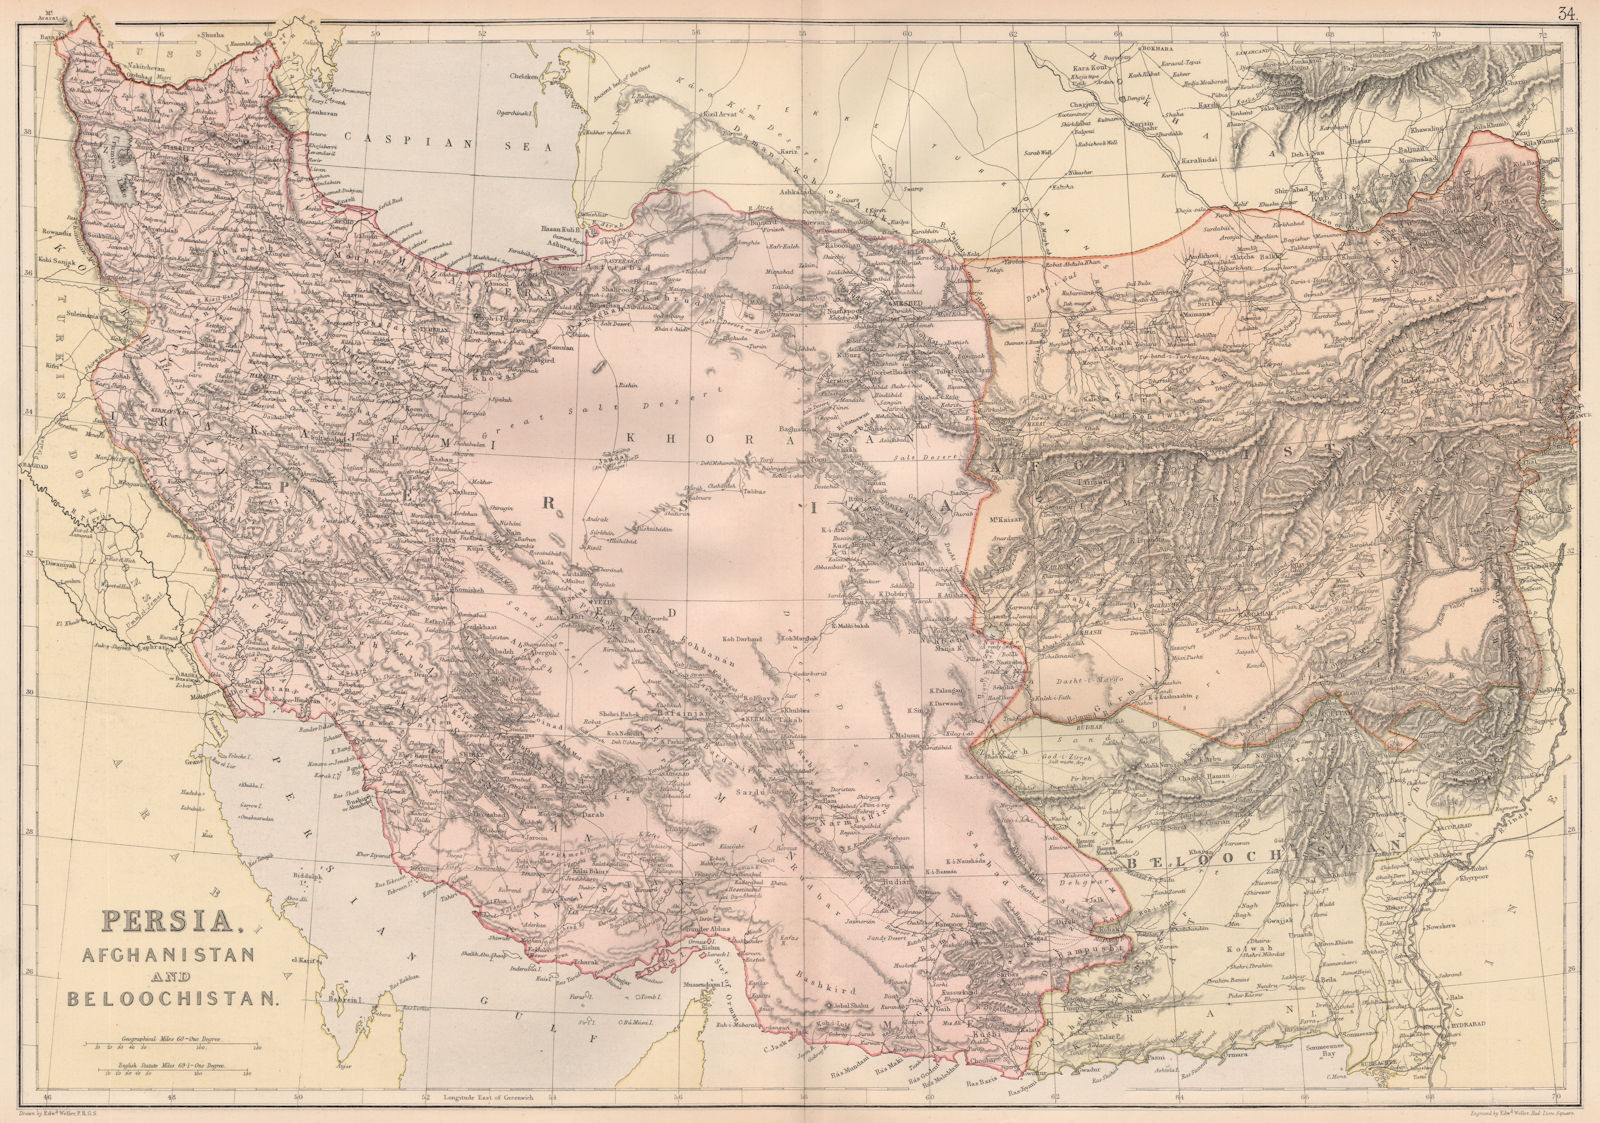 SW ASIA. Persia (Iran) Afghanistan Baluchistan. Persian Gulf. Caspian 1882 map